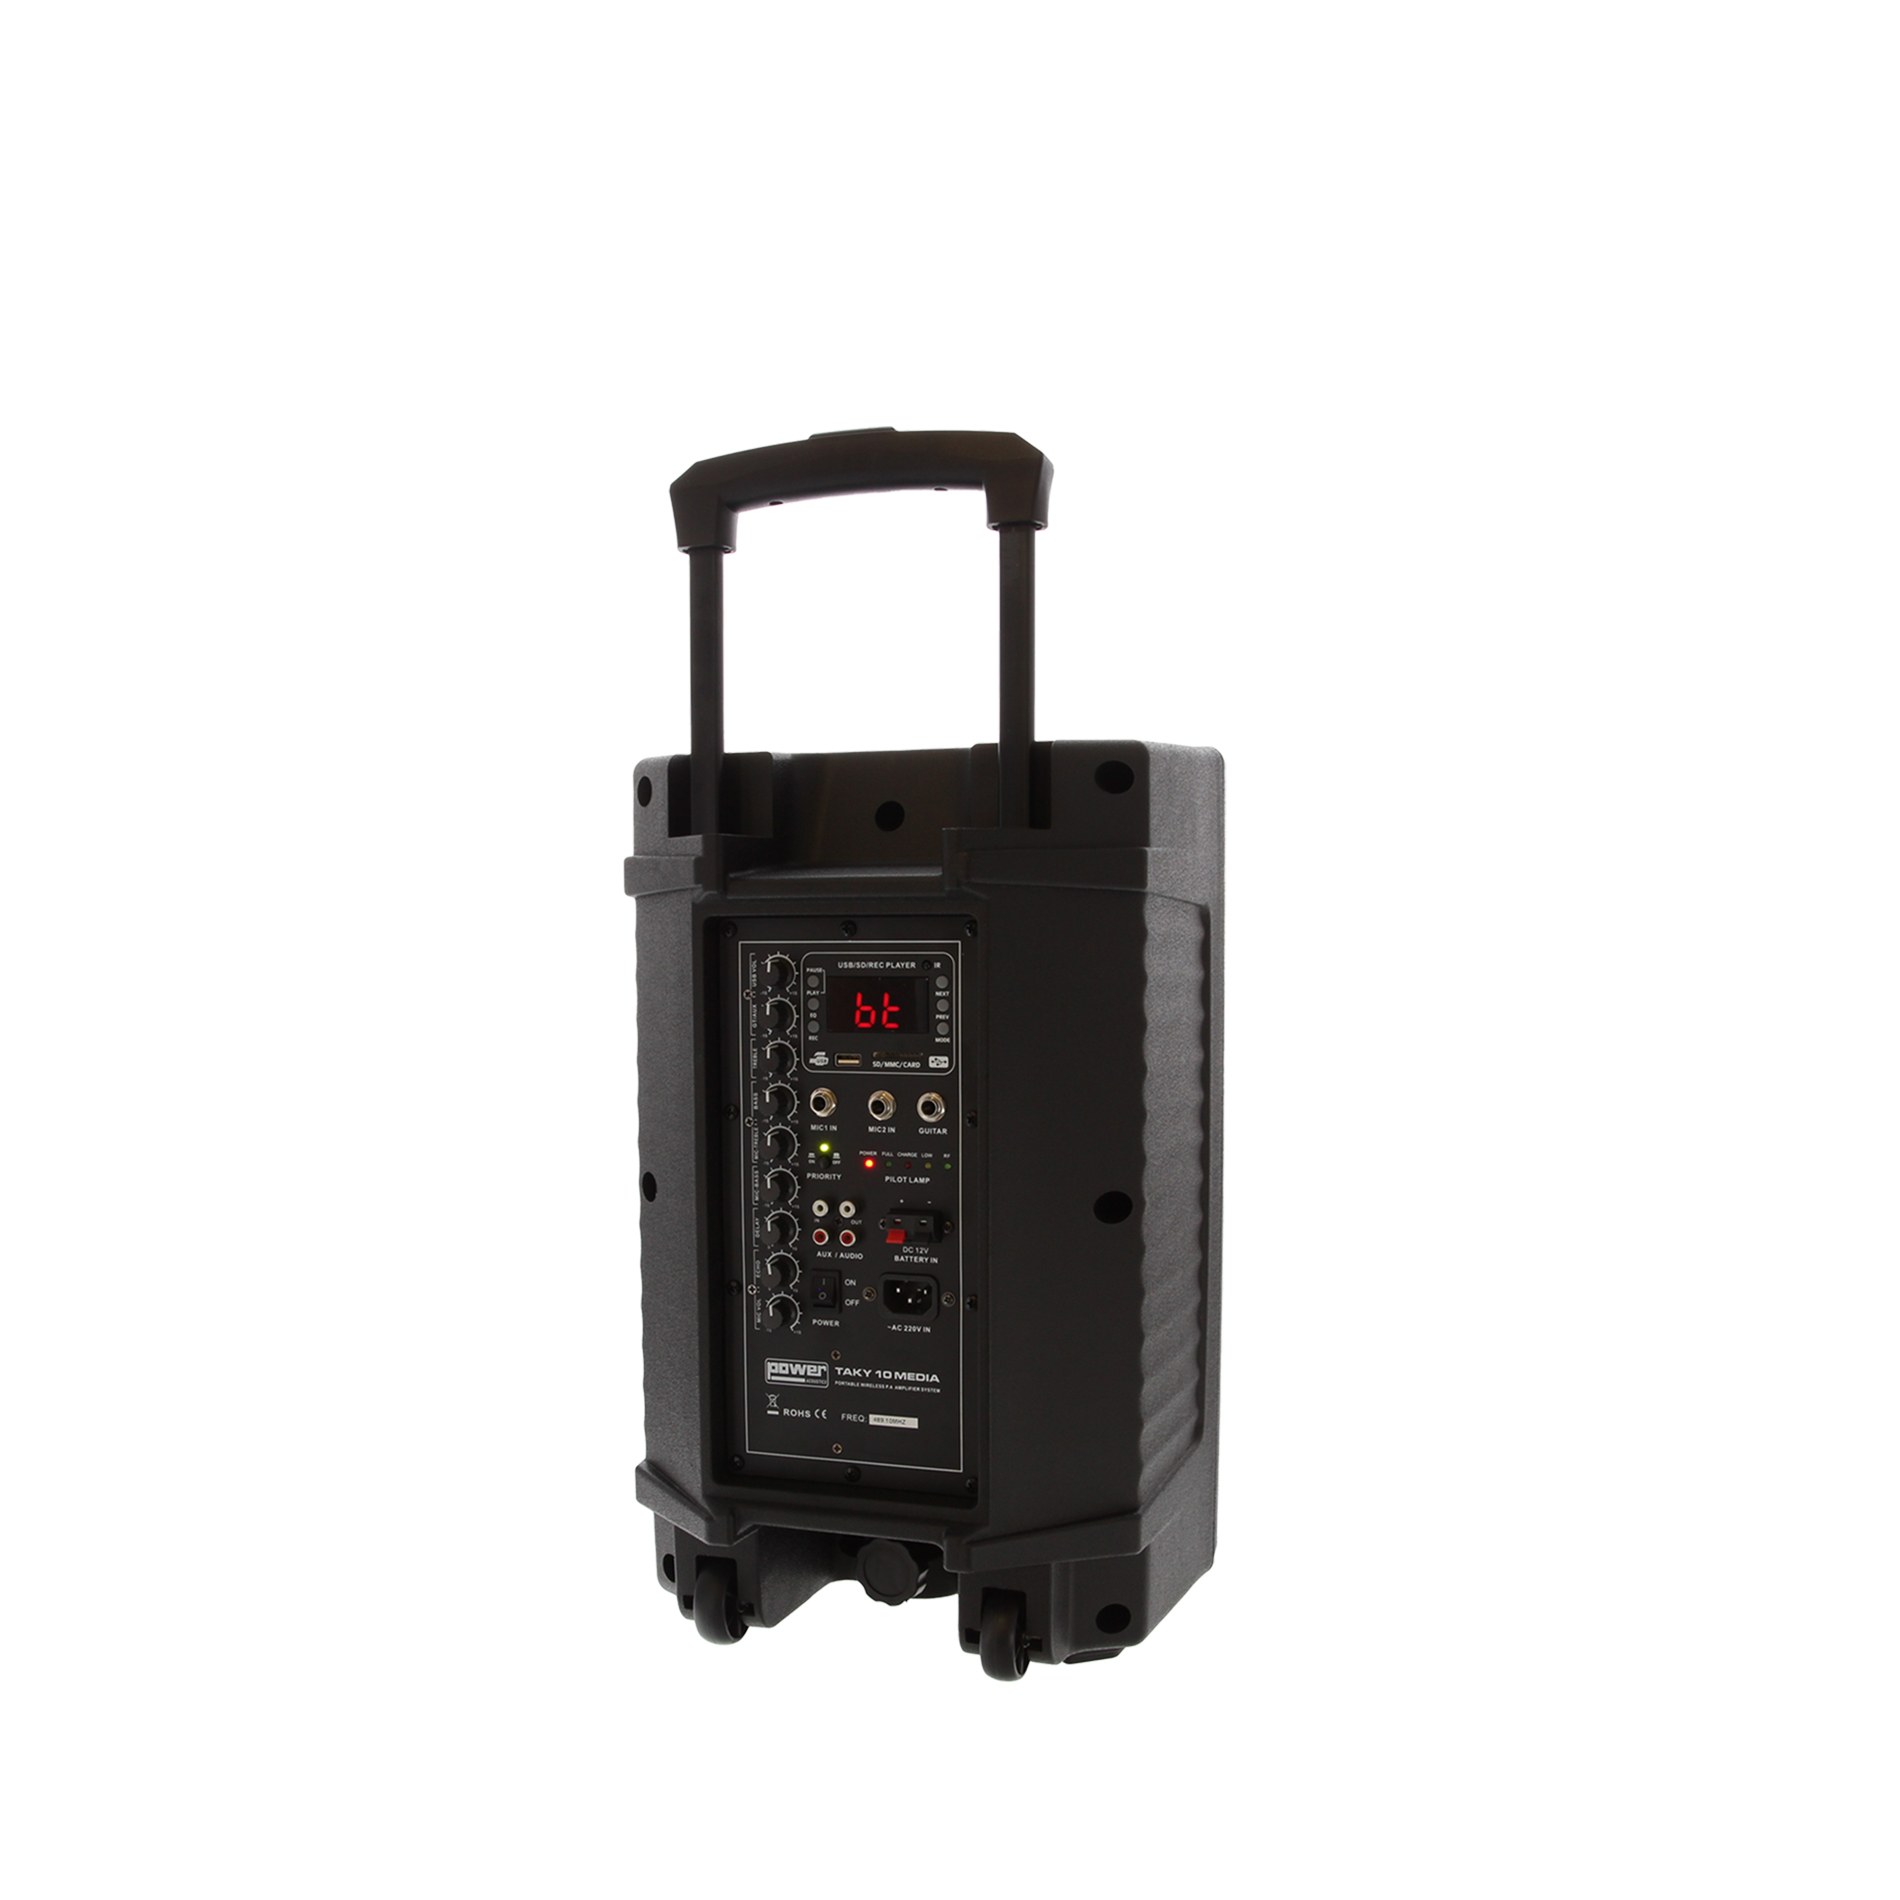 Power Acoustics Taky 10 Media - Portable PA system - Variation 4